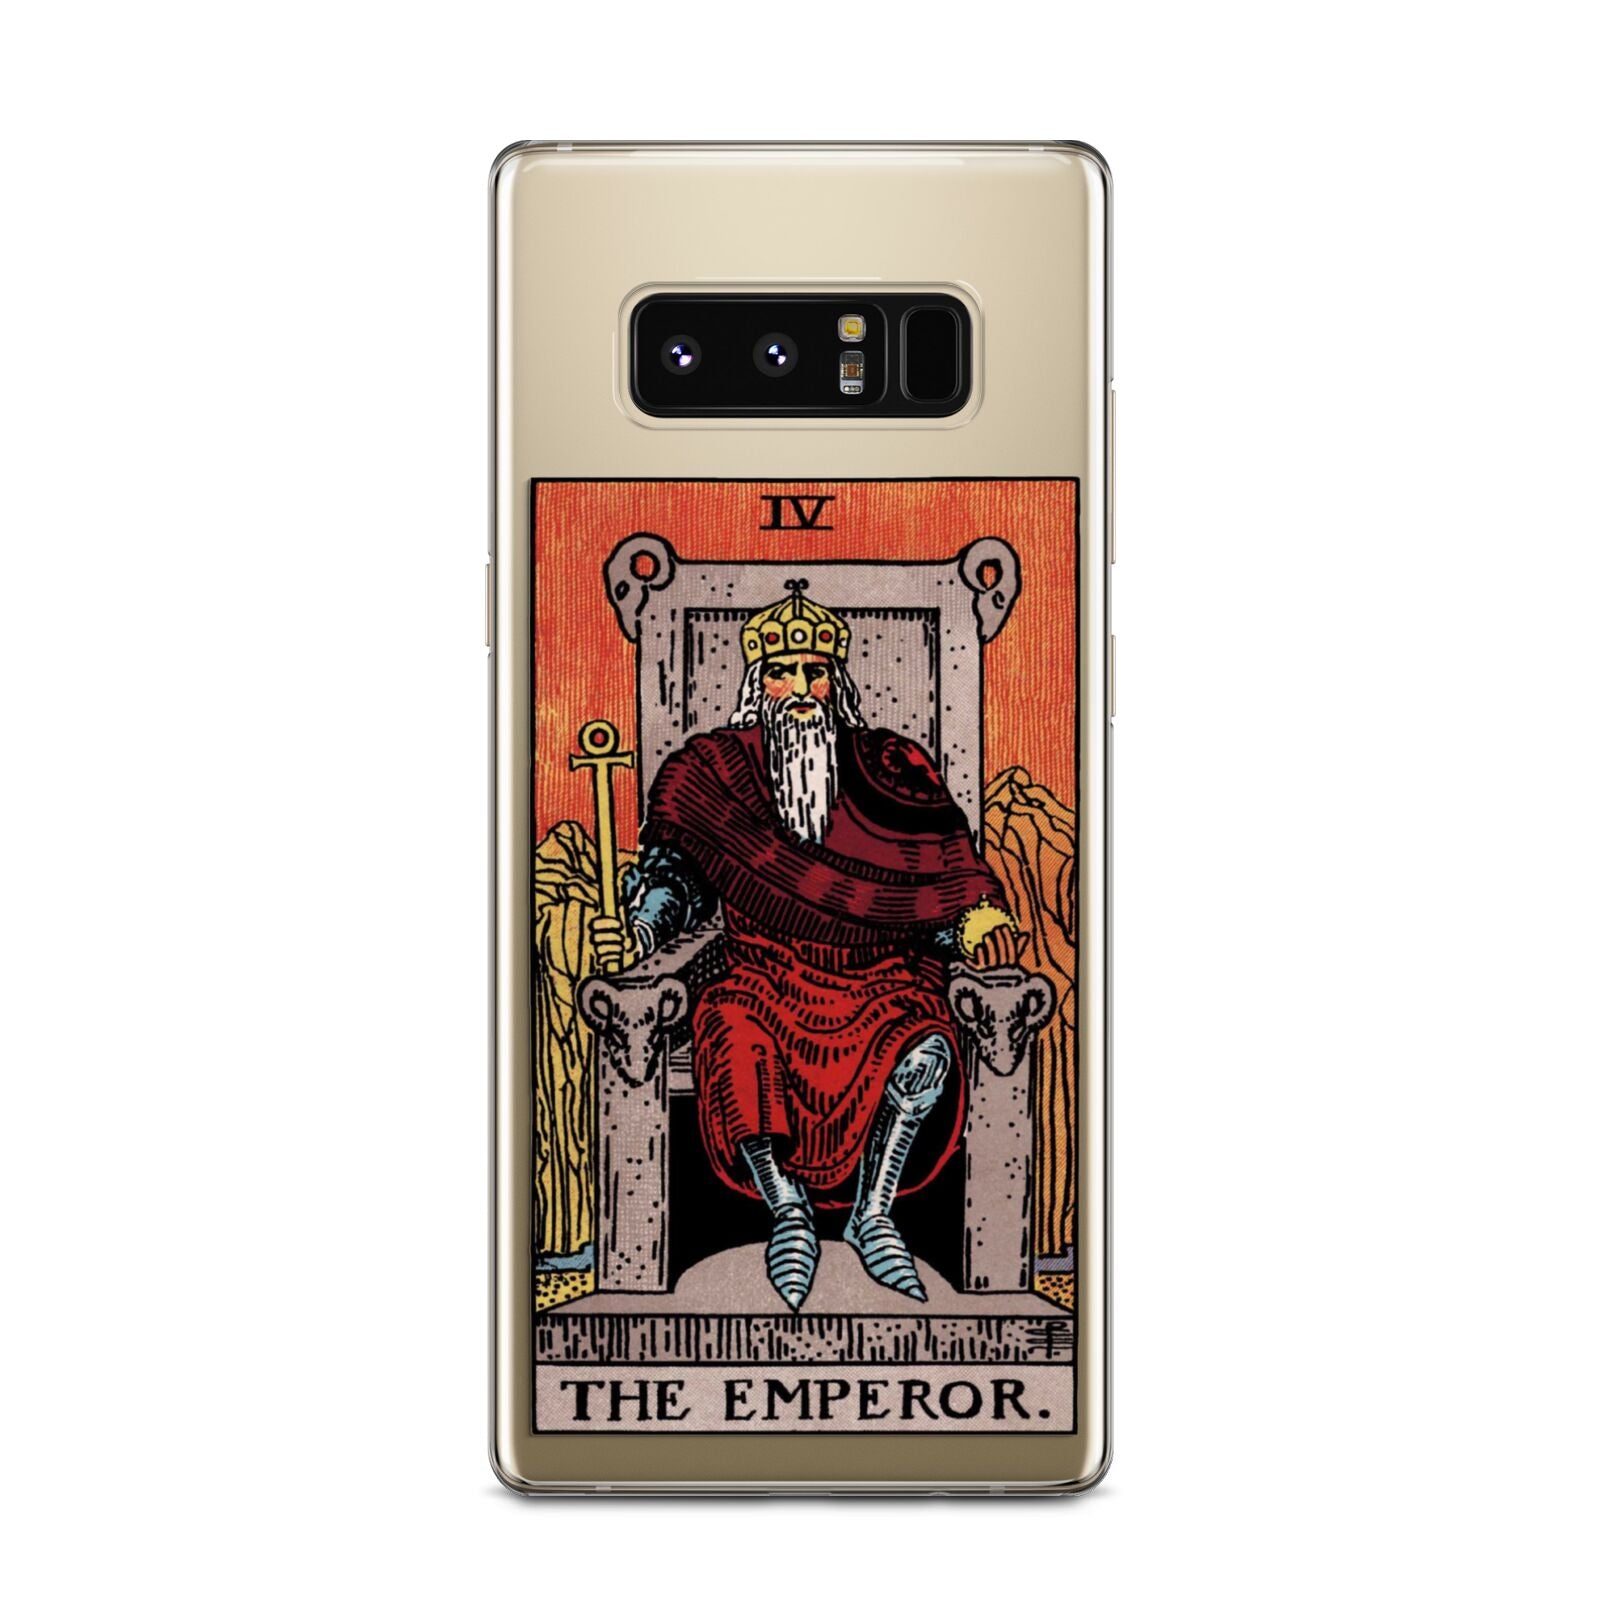 The Emperor Tarot Card Samsung Galaxy Note 8 Case